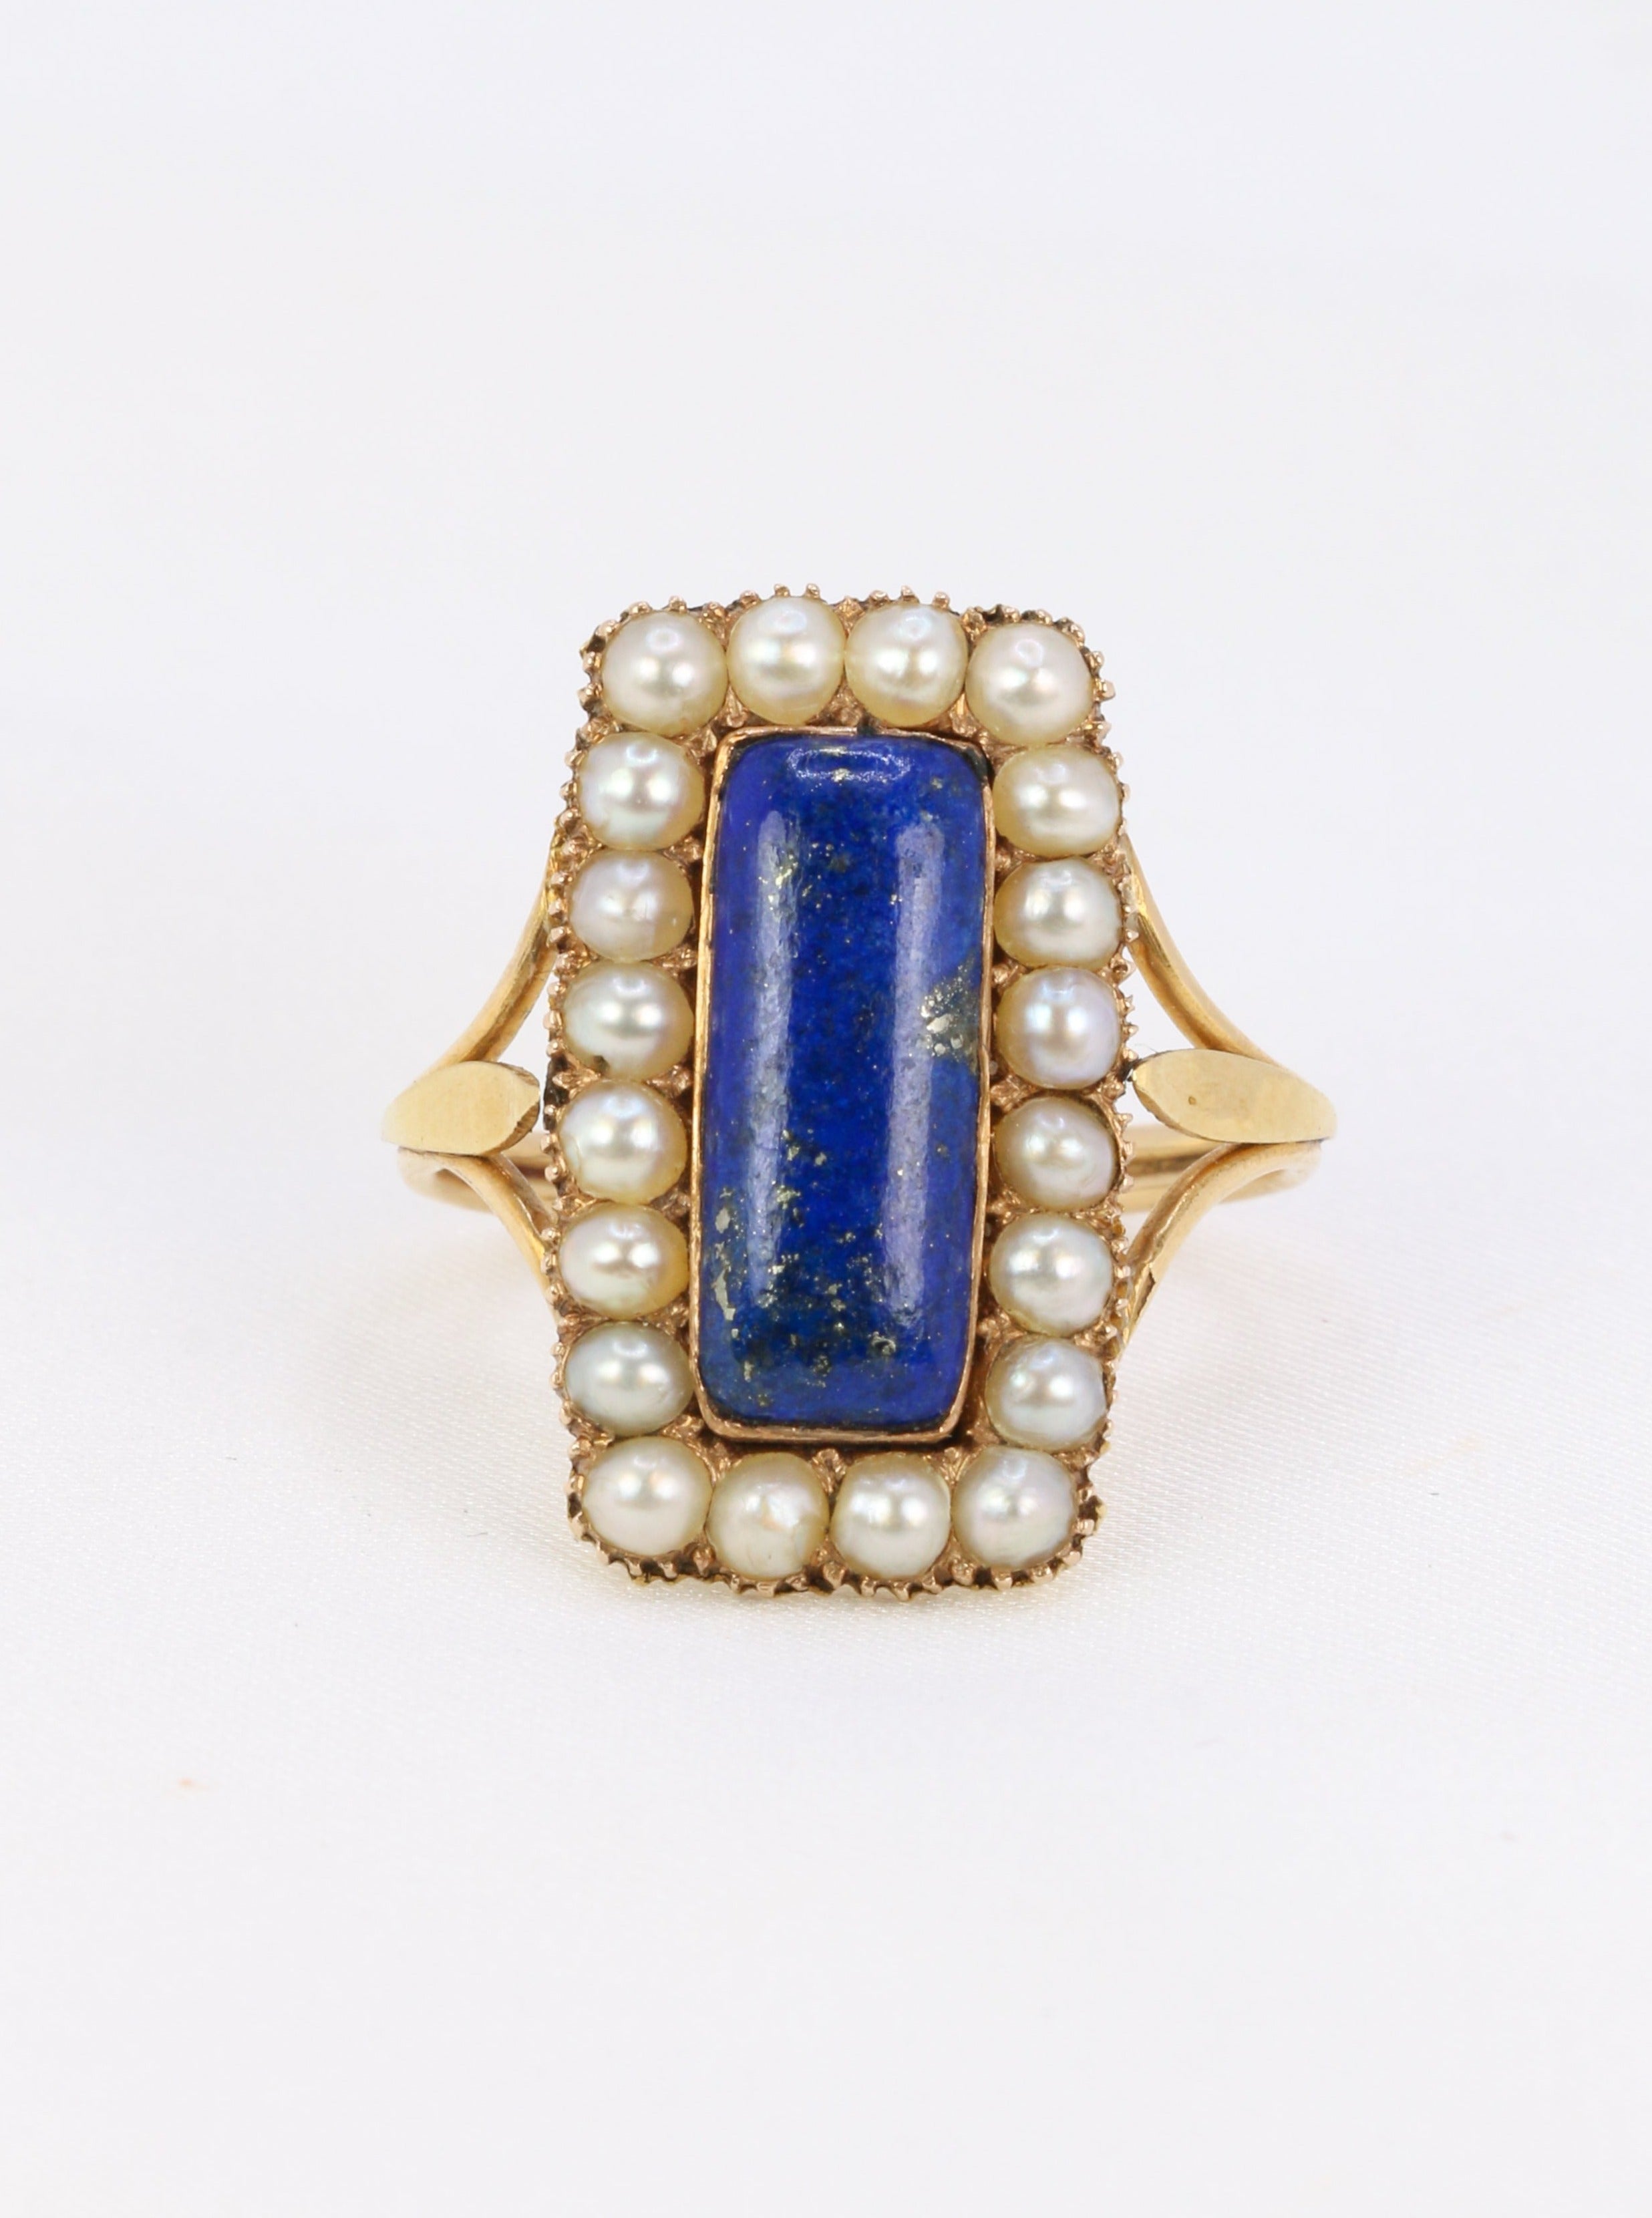 Bague ancienne en or, lapis-lazuli et perles fines